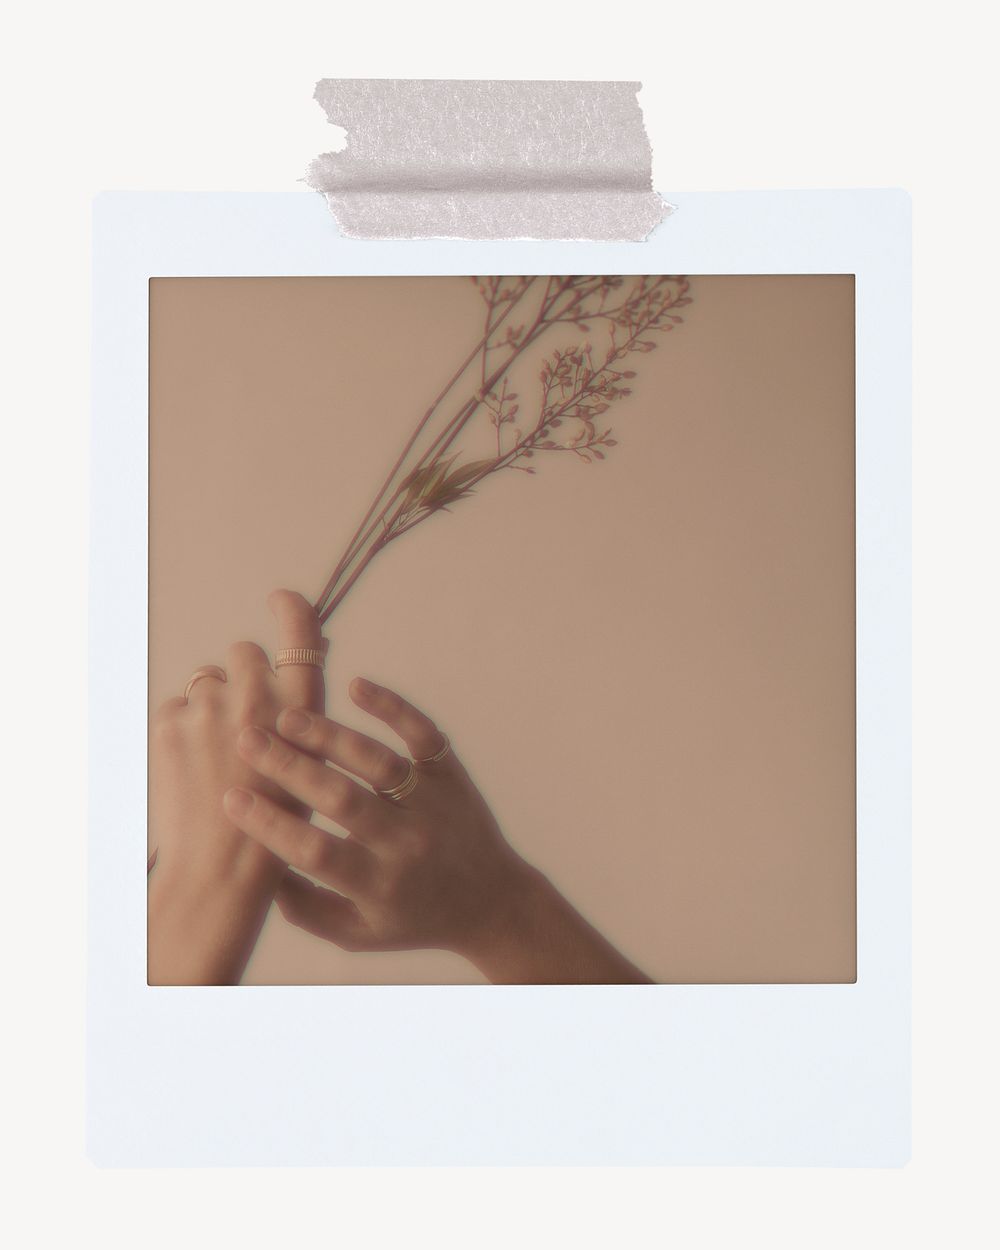 Aesthetic hands holding flower, instant photo frame